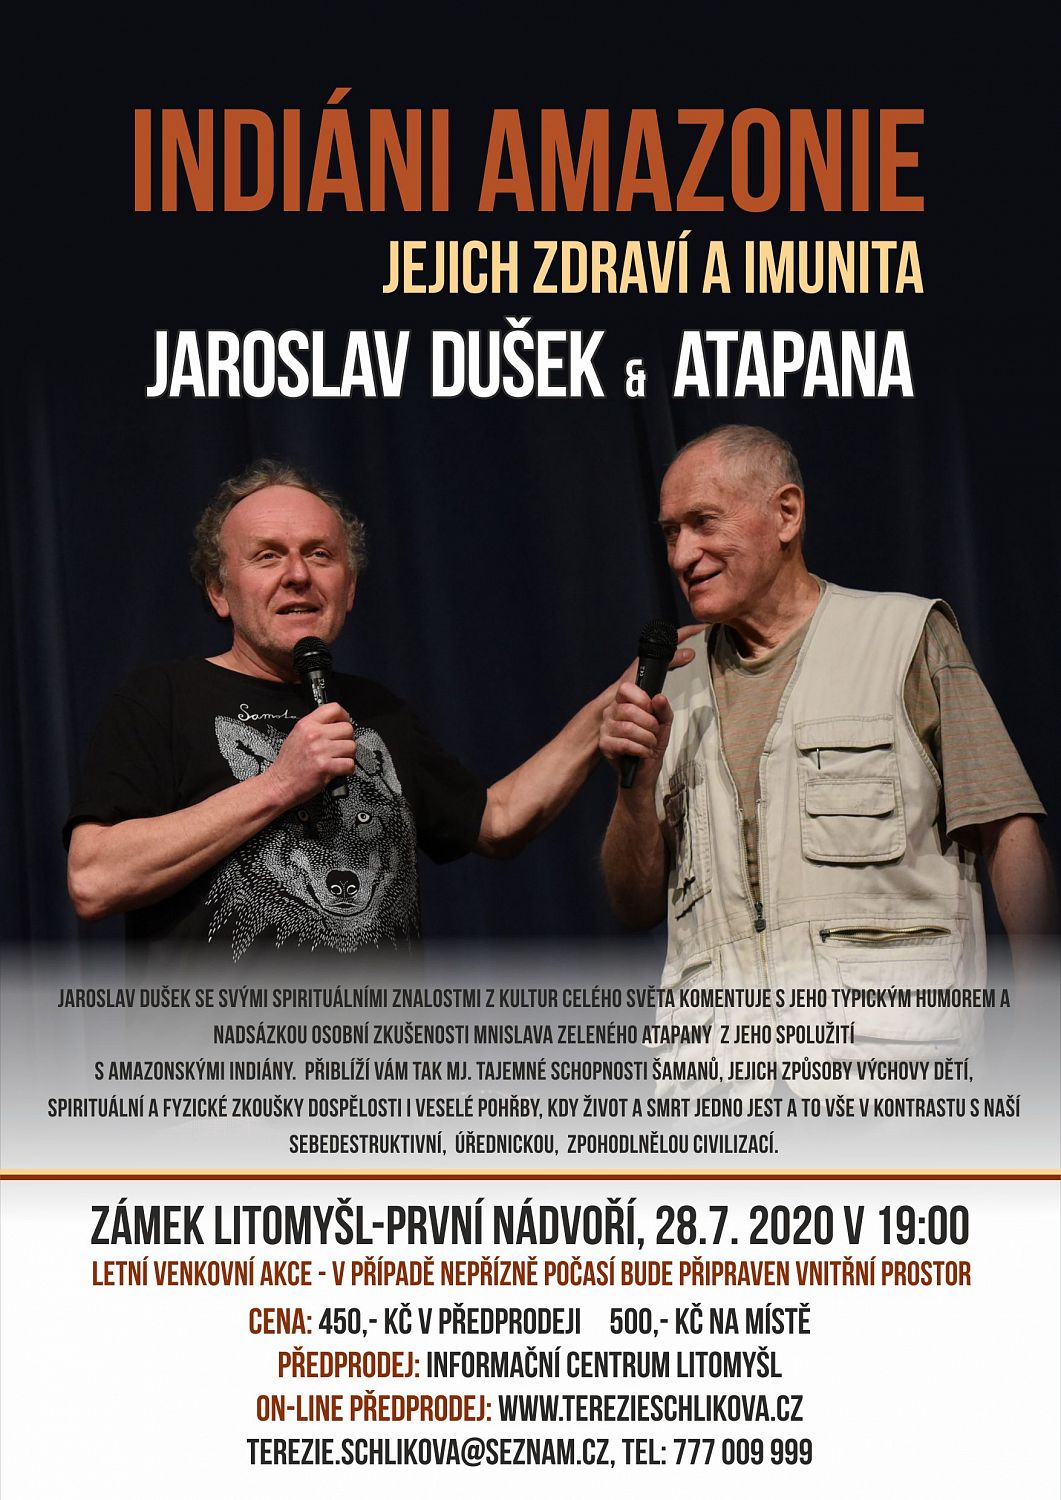 Letní venkovní akce s Jaroslavem Duškem & Atapanou